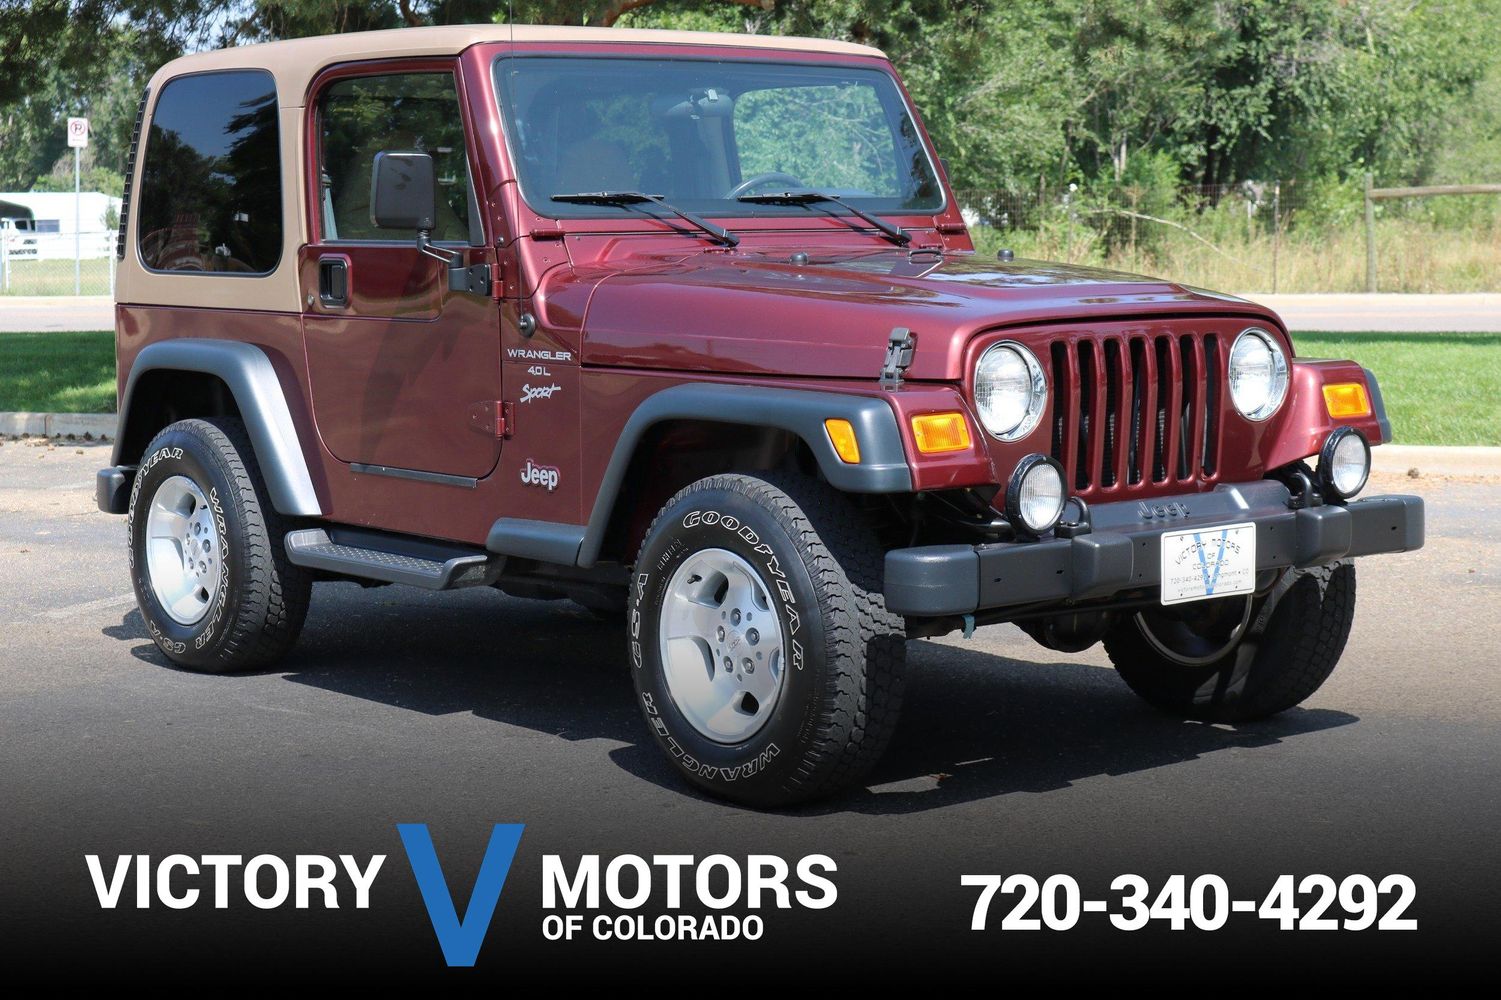 2001 Jeep Wrangler Sport | Victory Motors of Colorado